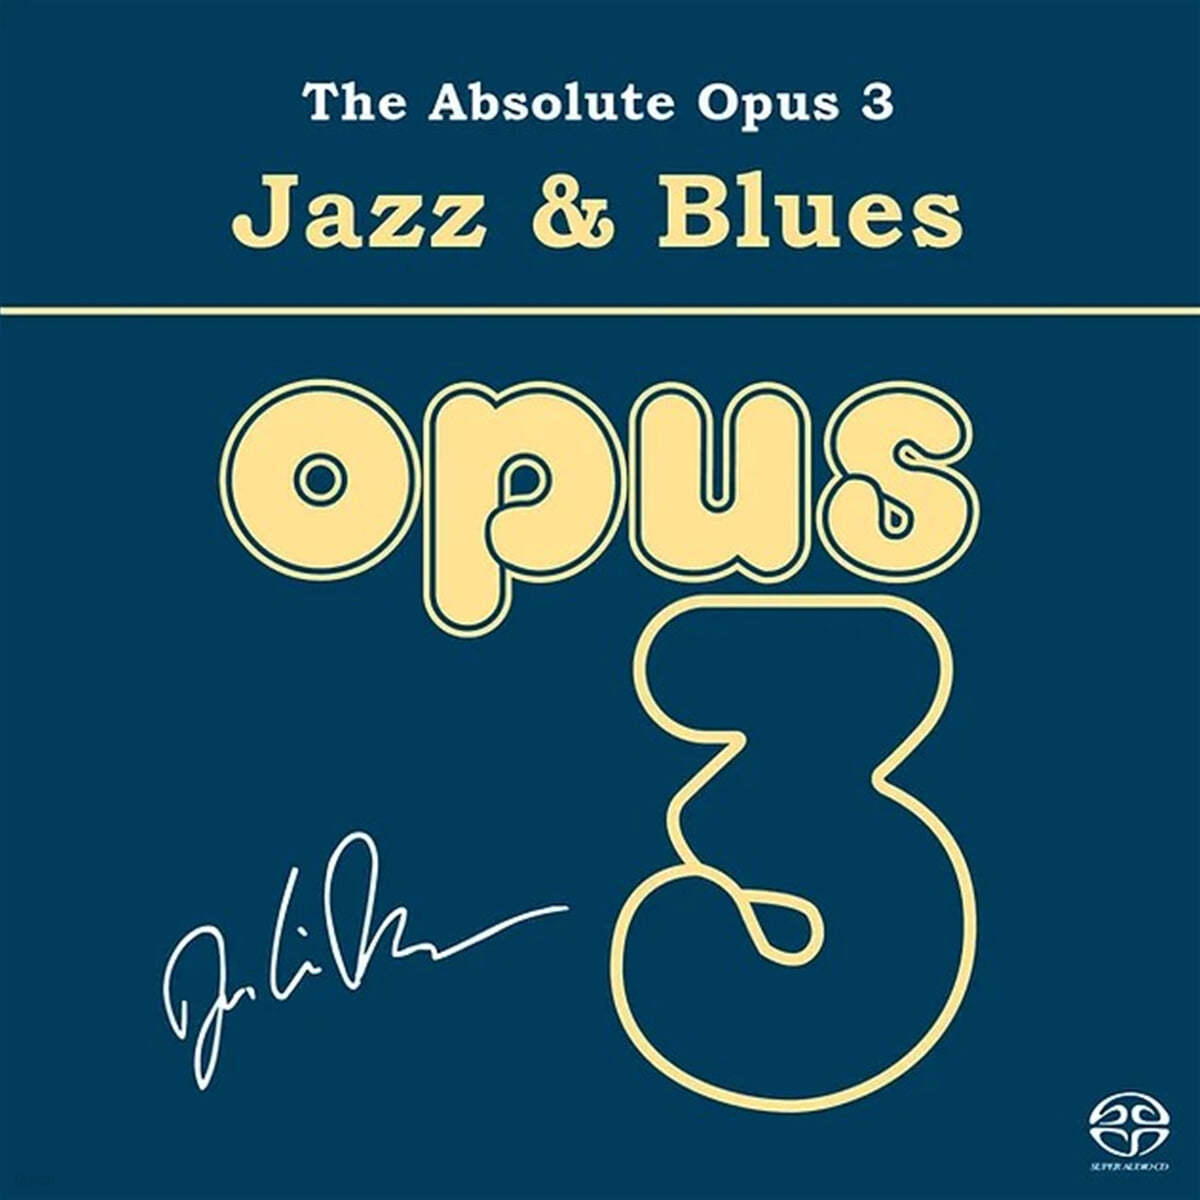 Opus3 & Aurora 레이블의 재즈 & 블루스 샘플러 앨범 (The Absolute Opus 3 - Jazz & Blues)